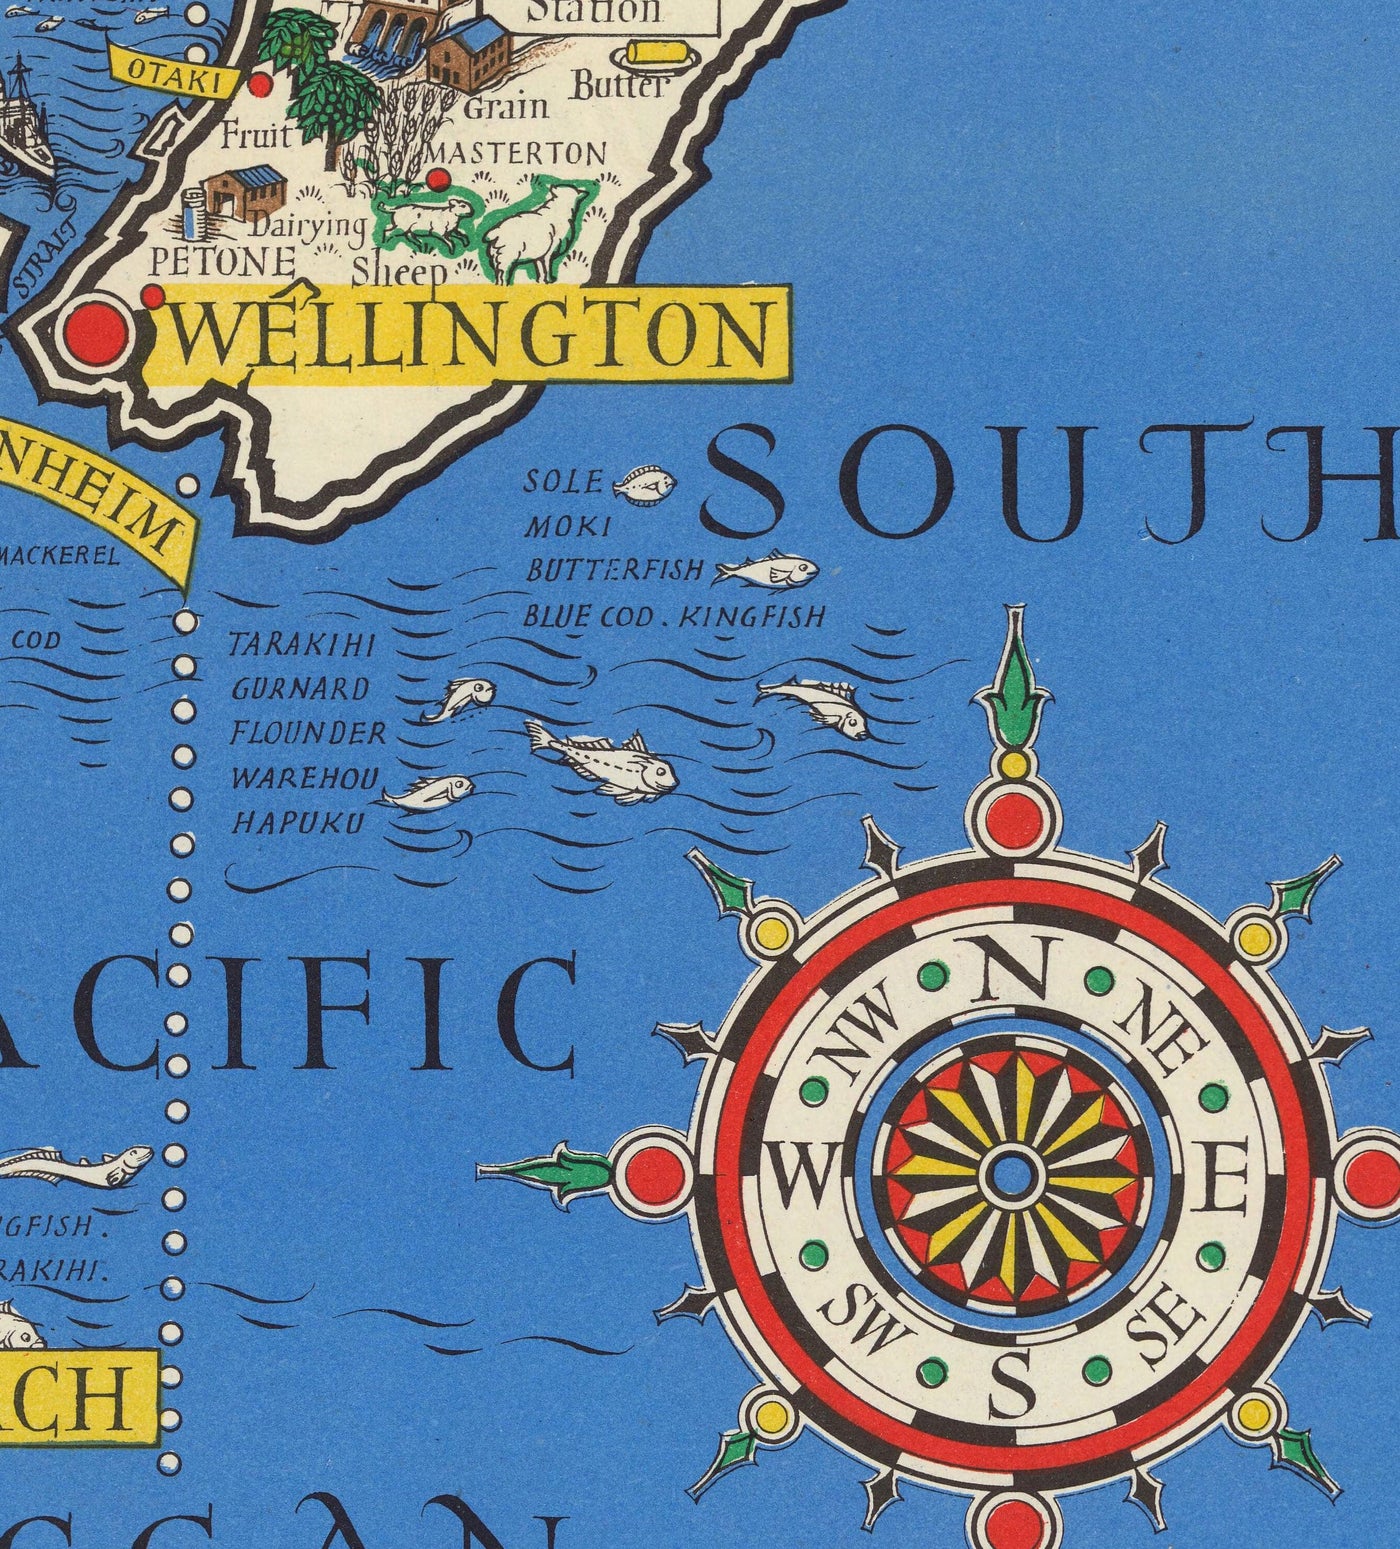 Viejo mapa de Nueva Zelanda, 1943 por Max Gill - Mapa de la Segunda Guerra Mundial del Imperio Británico colonial 2